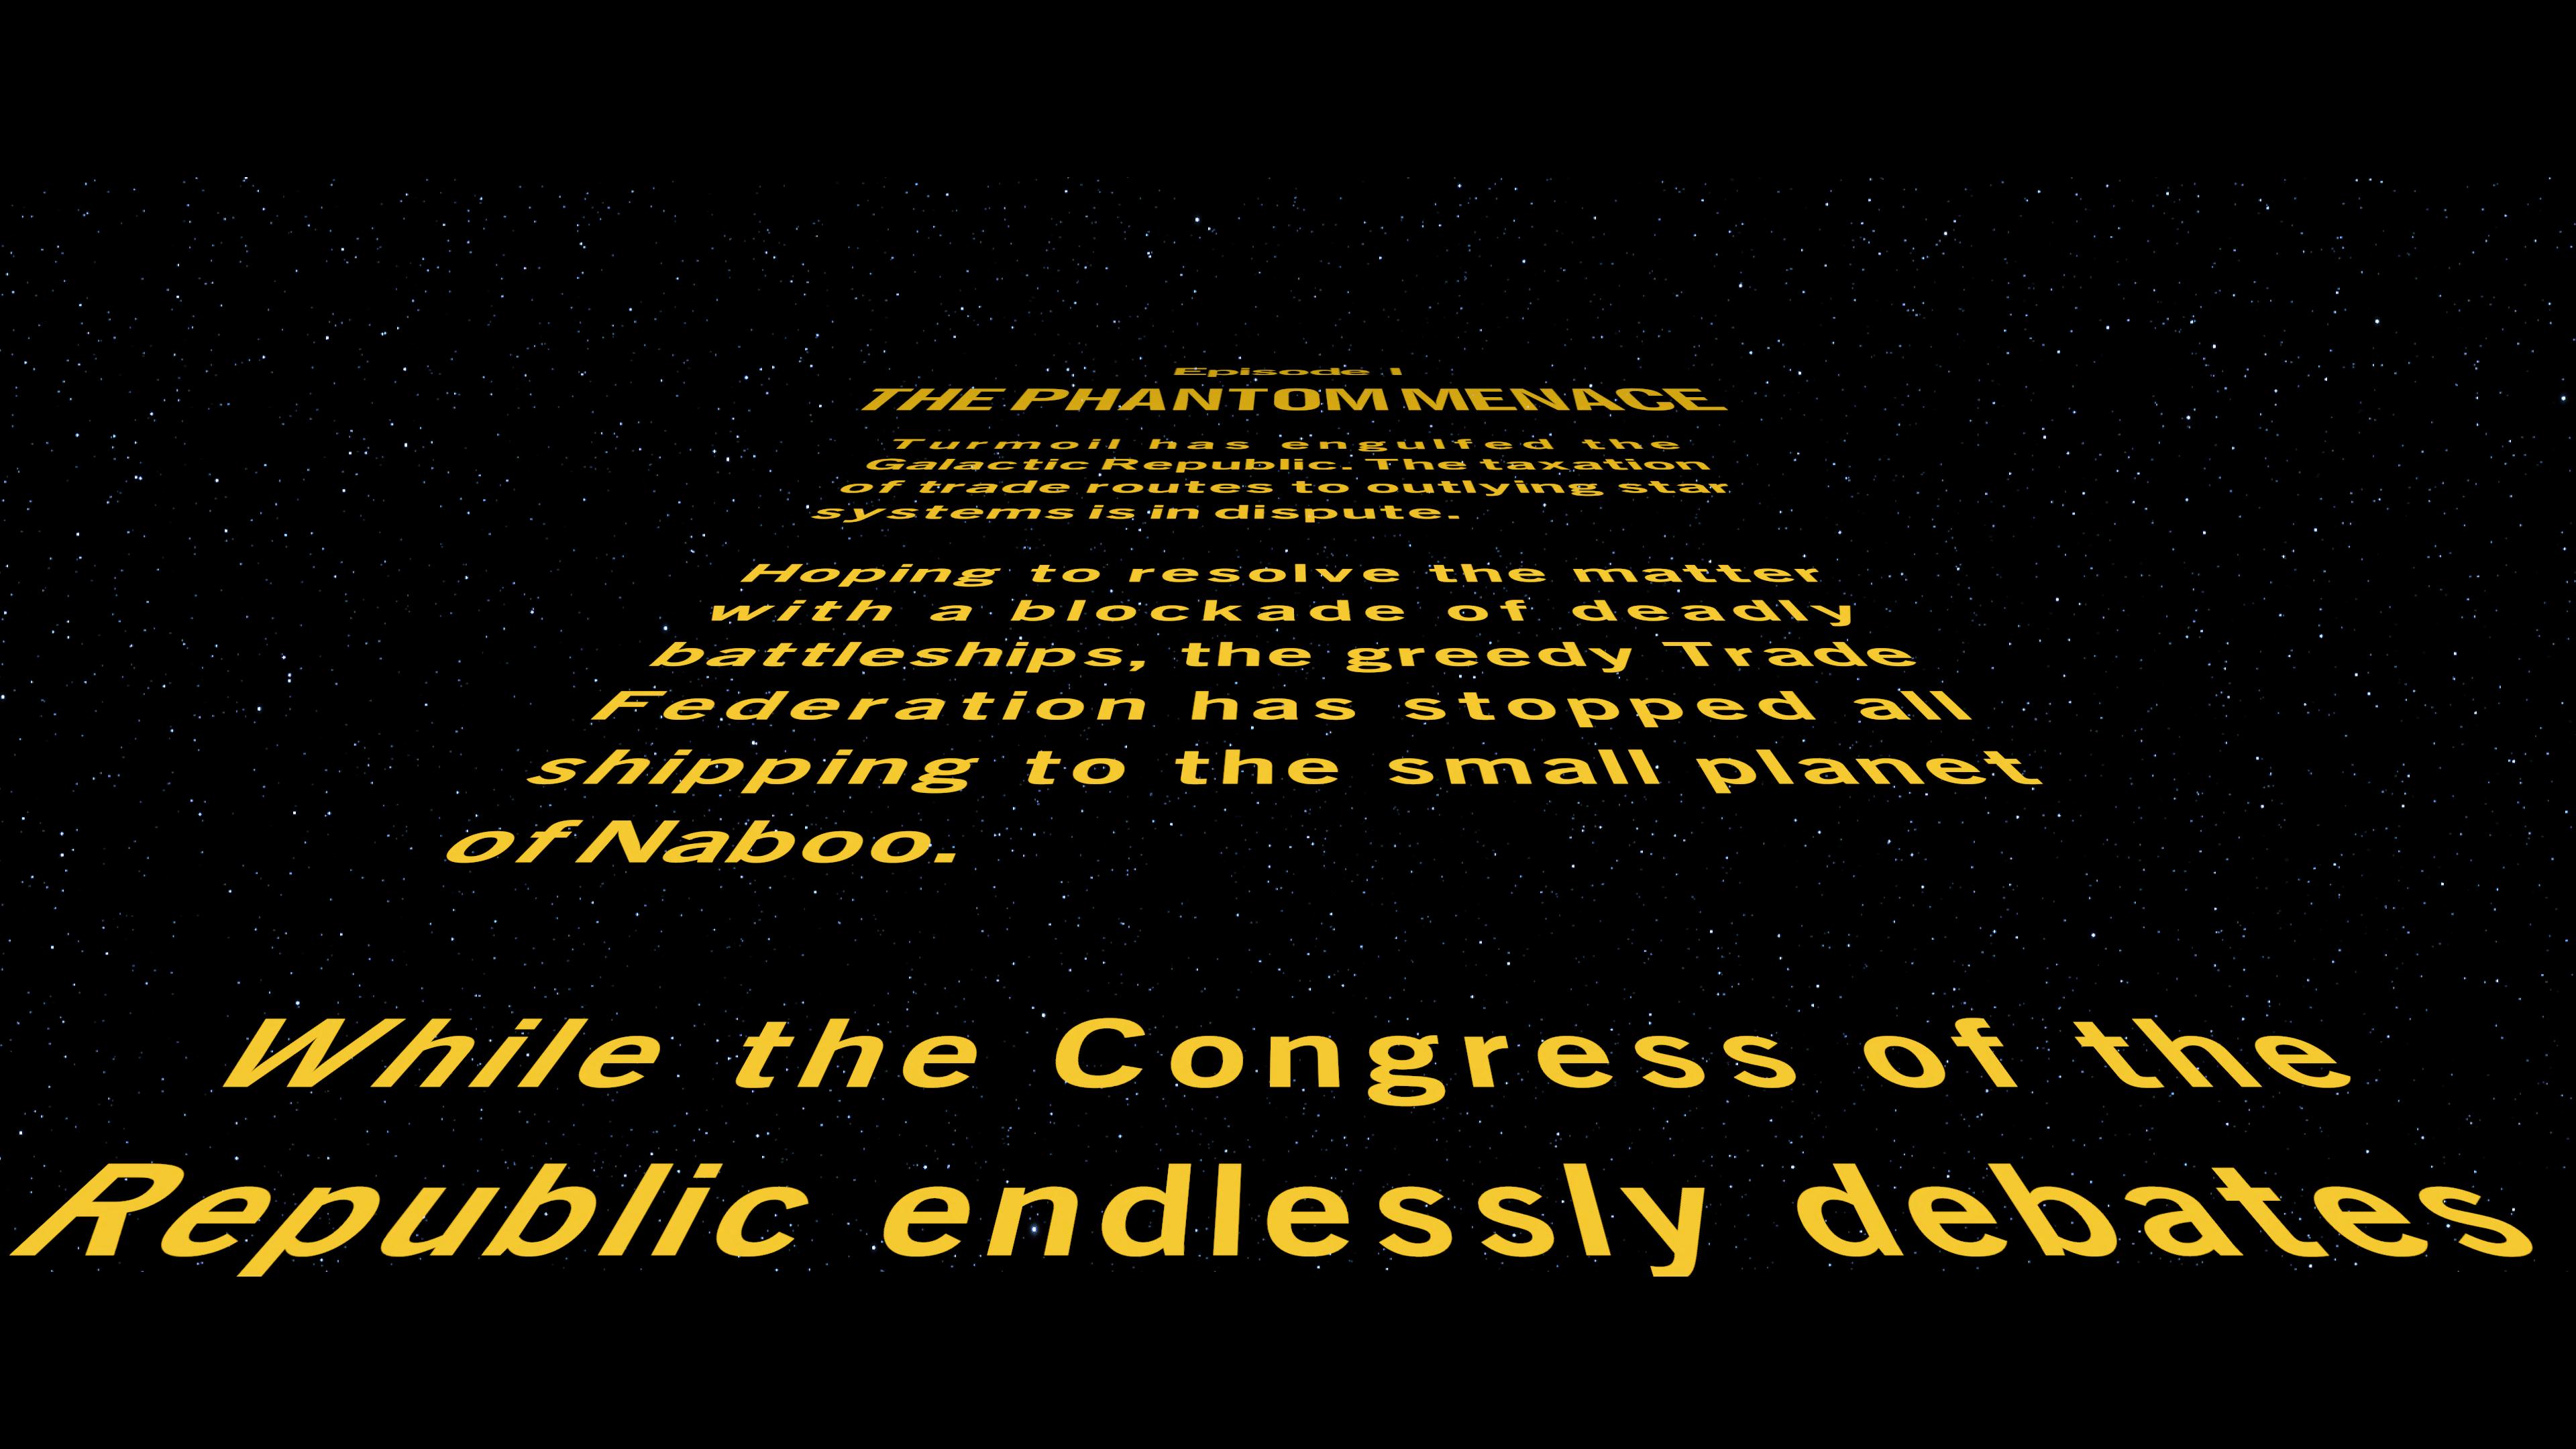 Klik pro zvětšení (LEGO Star Wars: The Skywalker Saga - recenze)